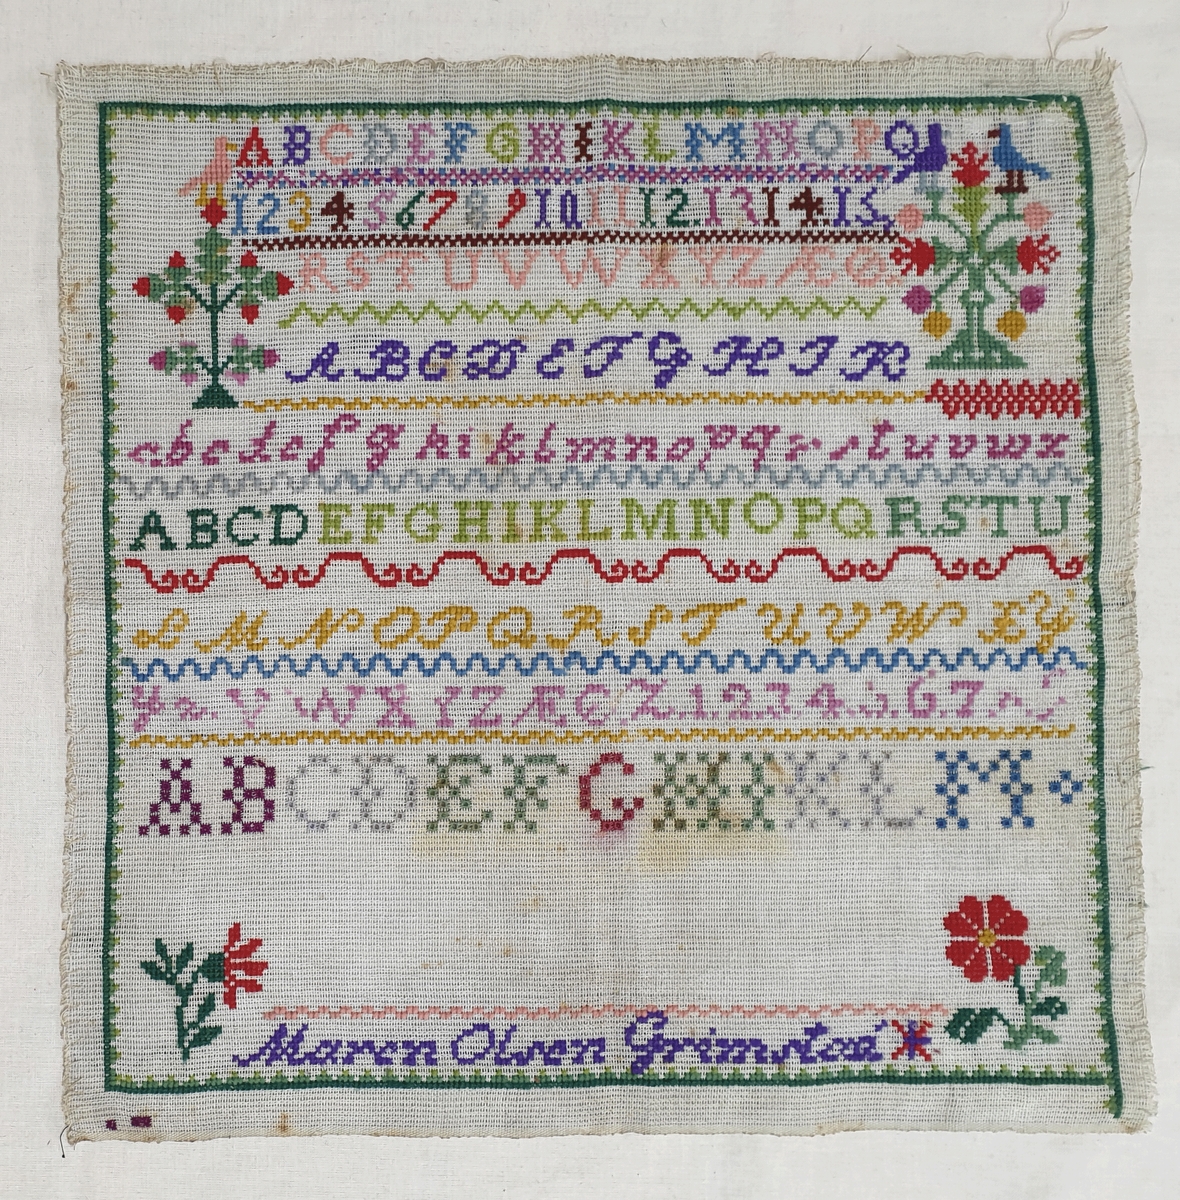 Brodert navneduk med bokstaver og tall i forskjellige farger på strie (kanvas).